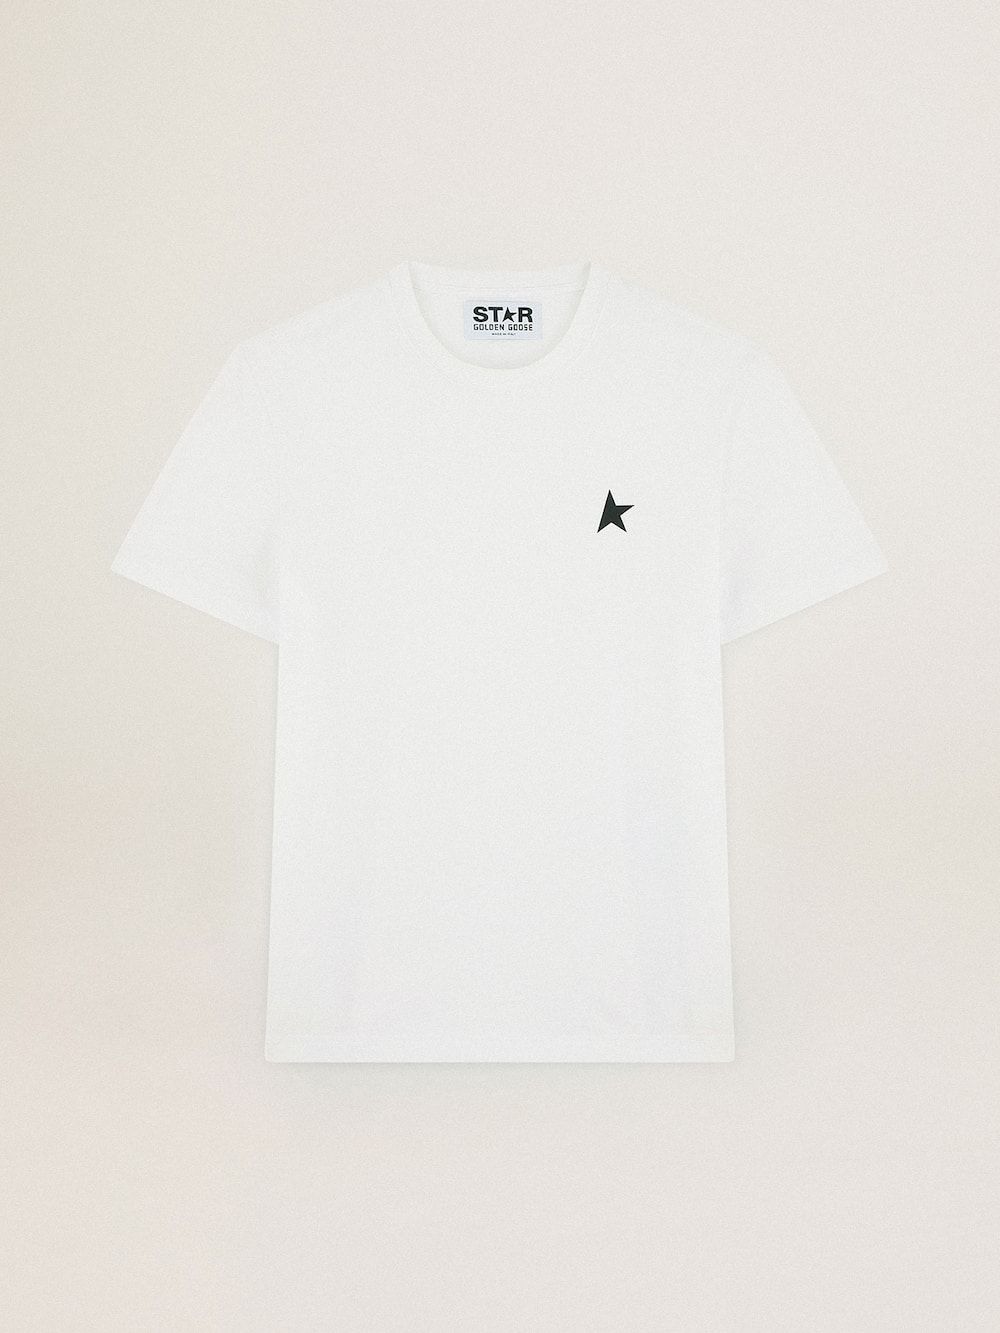 Golden Goose - T-shirt blanc collection Star avec étoile verte contrastée sur le devant in 